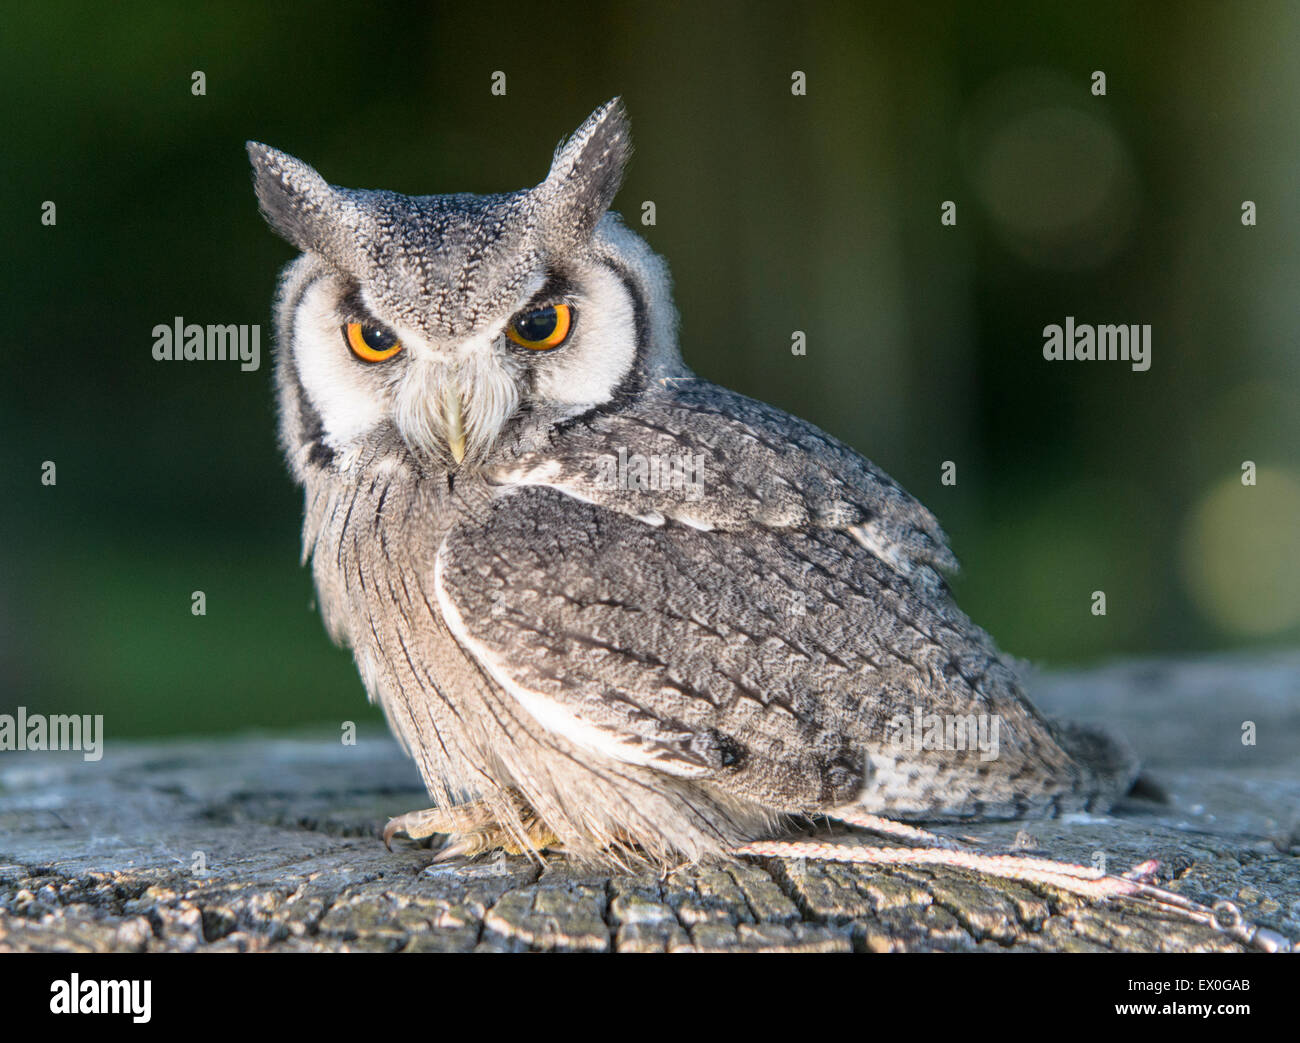 White faced Owl Stock Photo